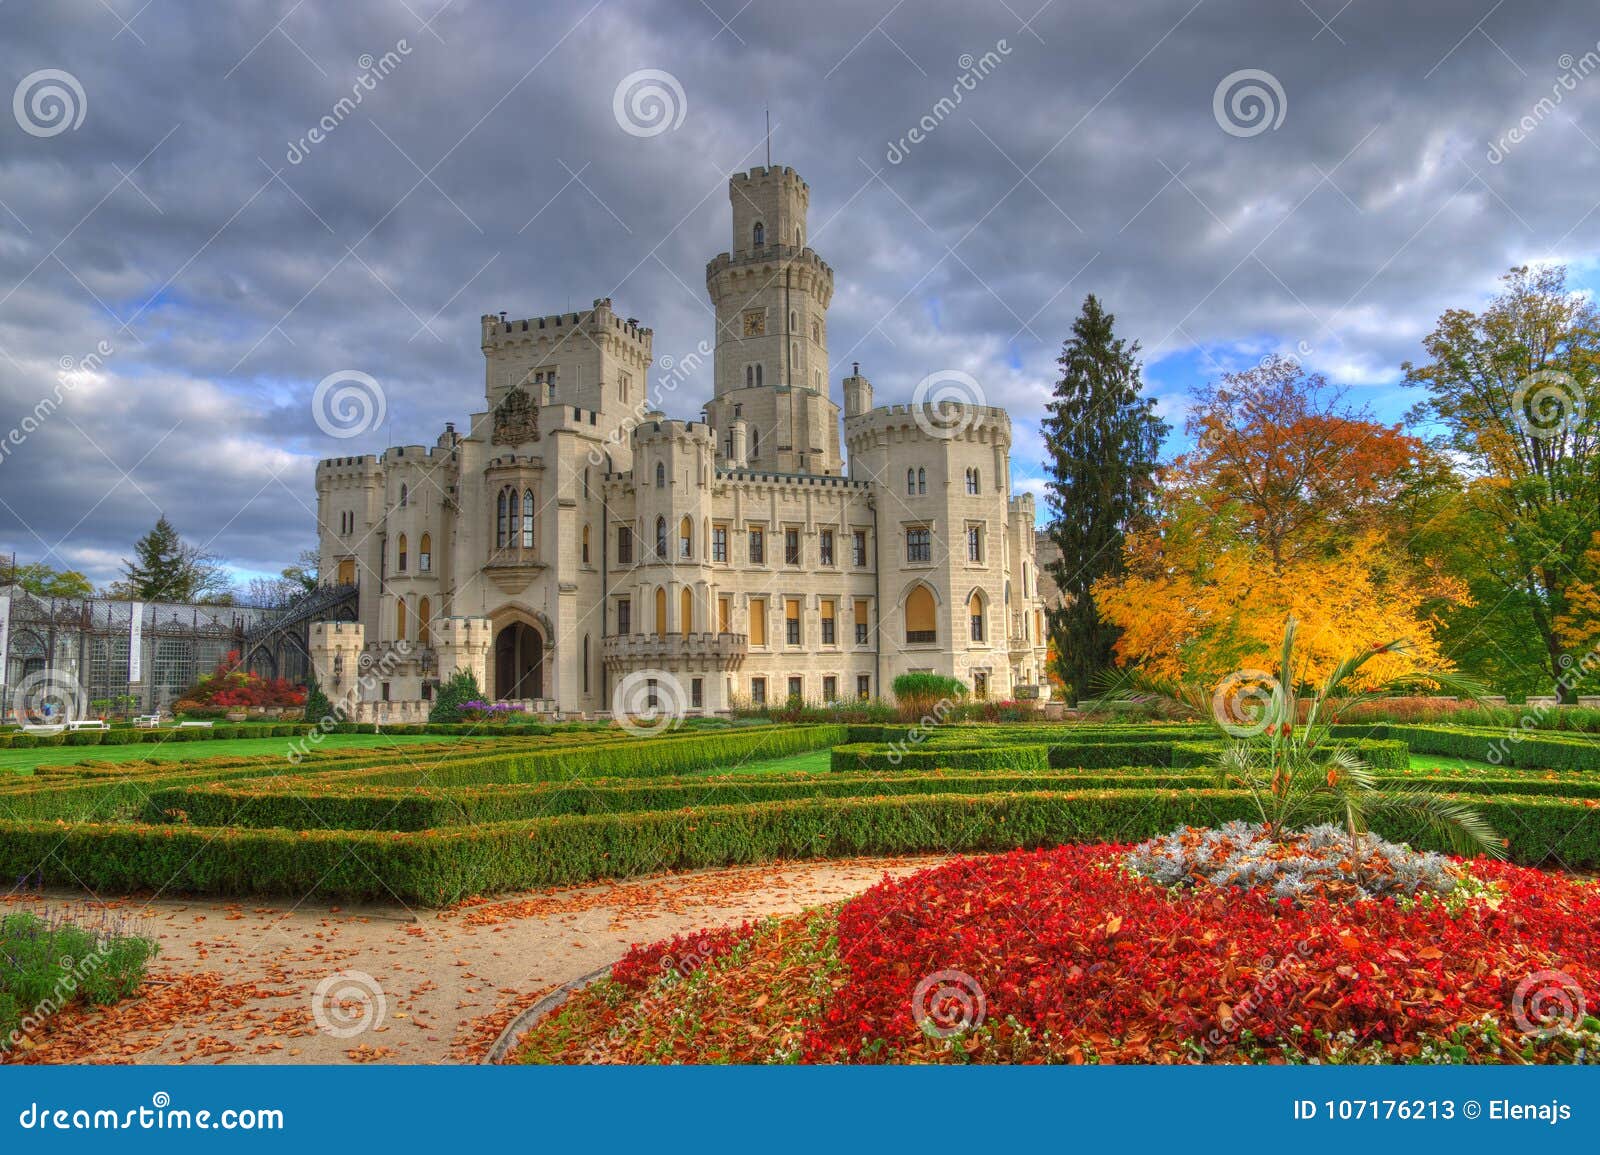 autumn near hluboka castle /zamek hluboka/ , czech republich